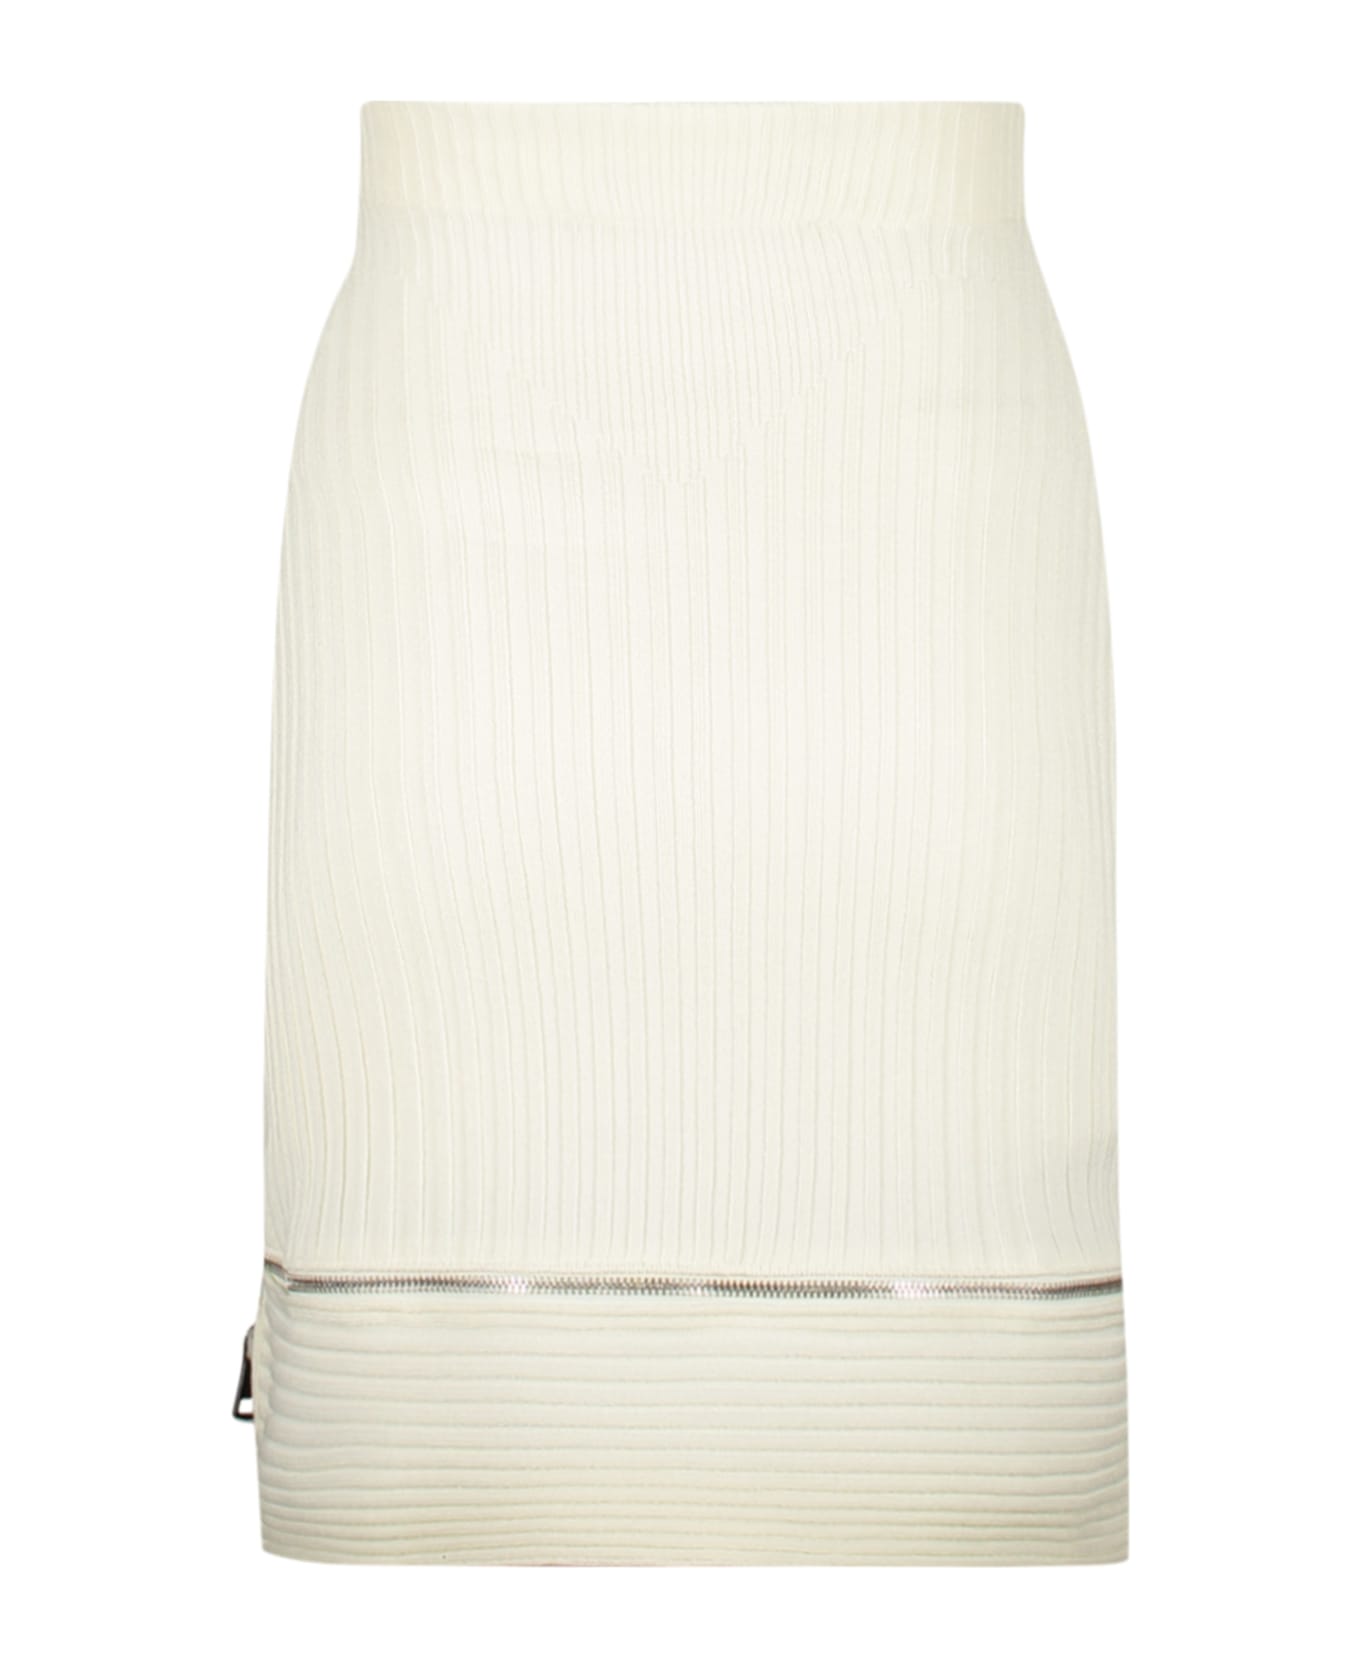 ANDREĀDAMO Knitted Mini Skirt - White